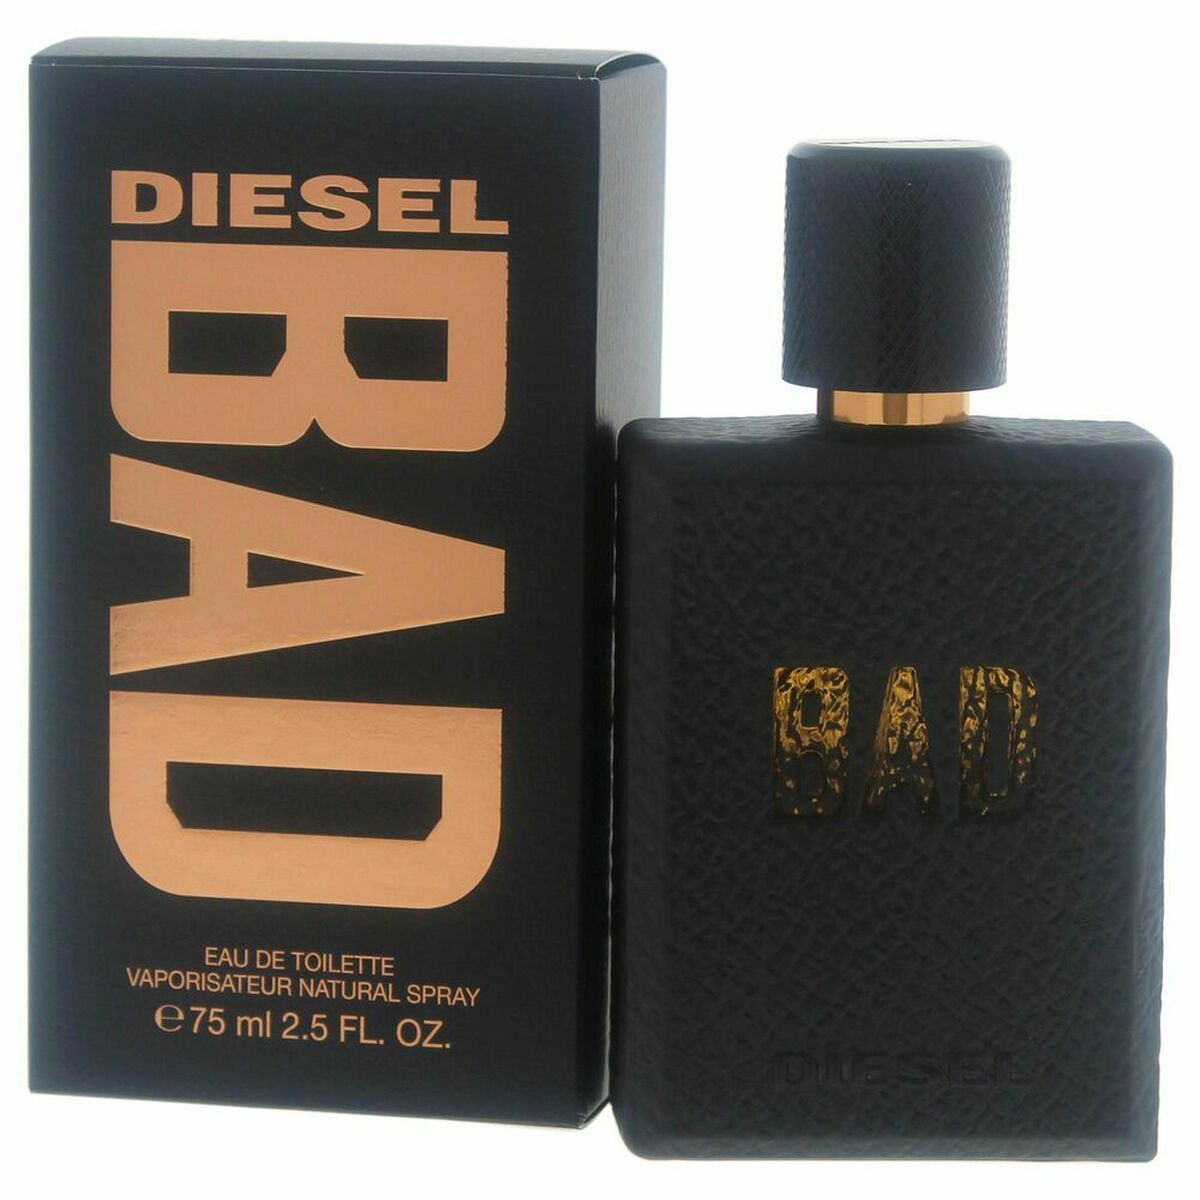 Men's Perfume Diesel Bad EDT EDT 75 ml